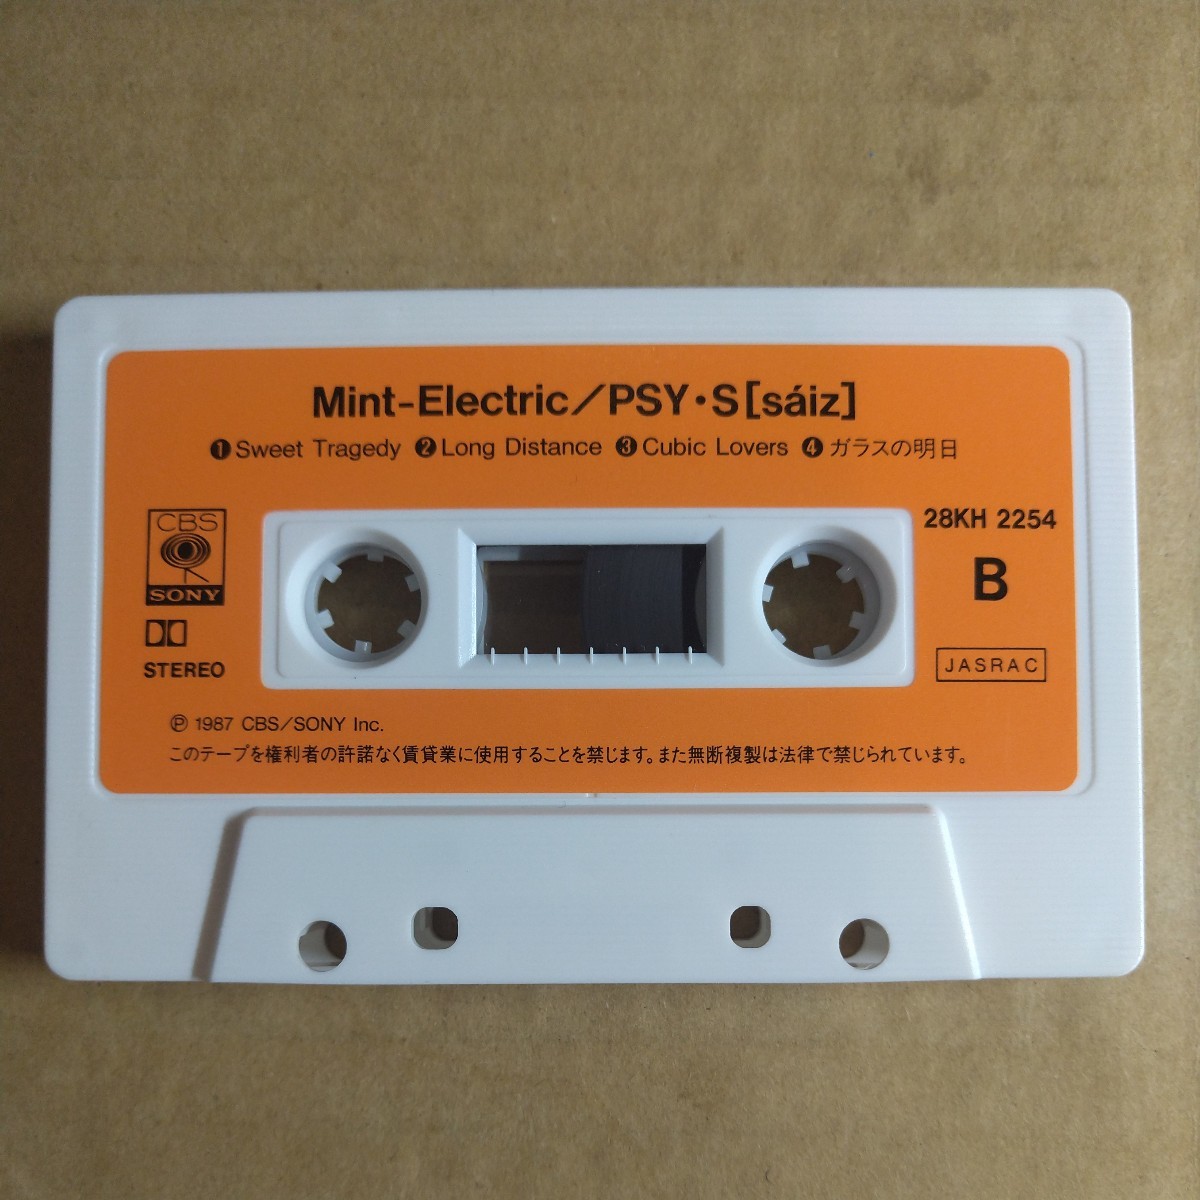 【希少】サイズ「mint-electric」ミュージックテープ 1987年 3rd ★★PSY・S レモンの勇気to-y電気とミントCD、LPレコードではありません_画像5